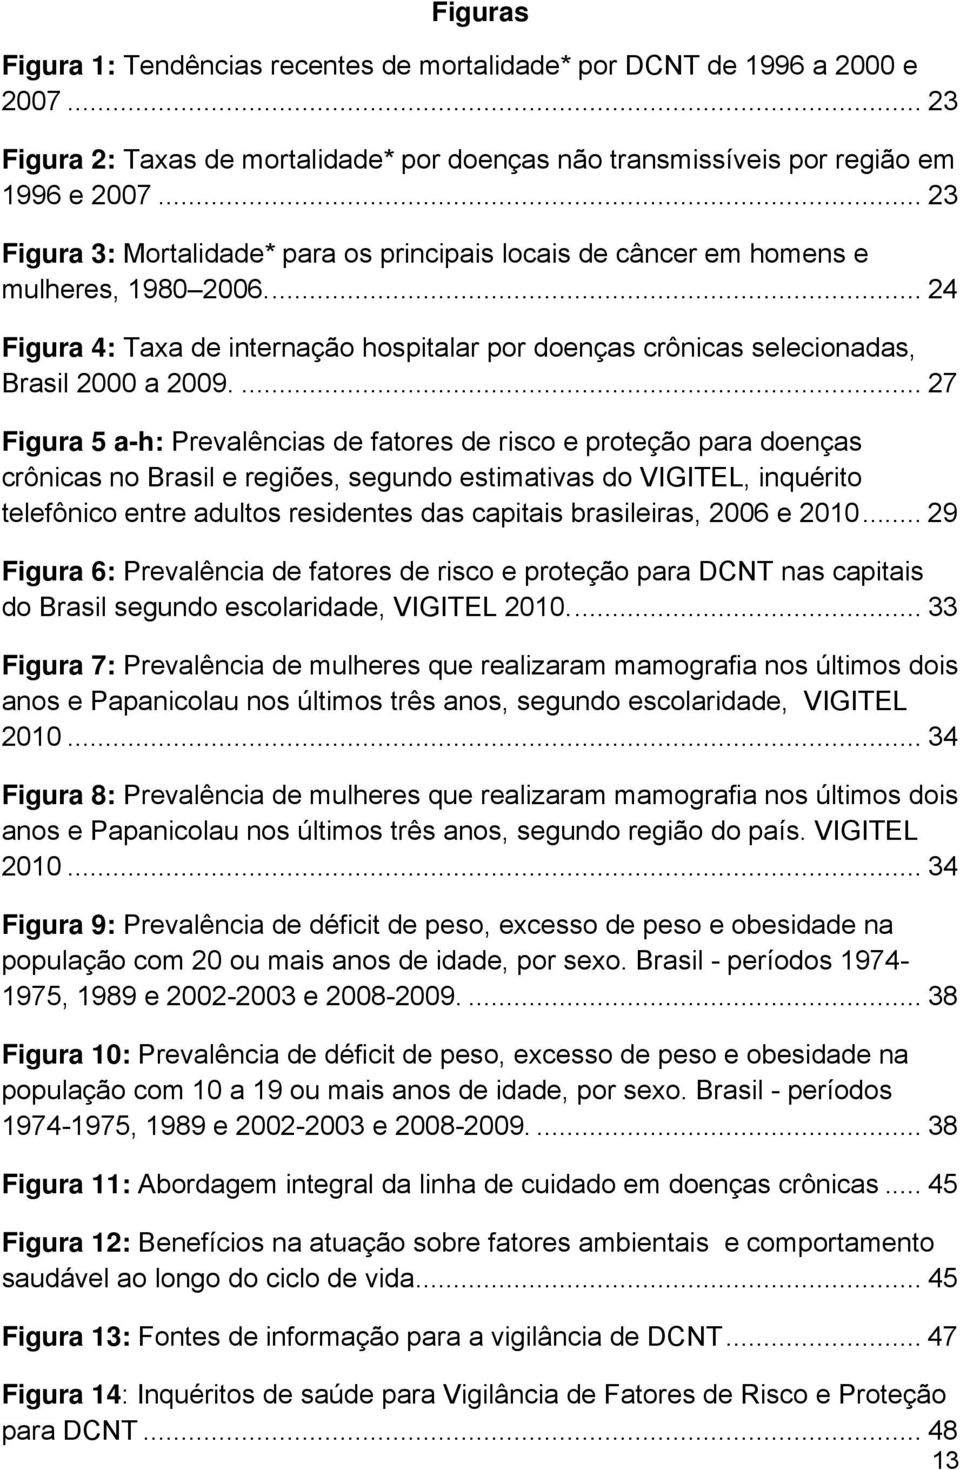 ... 27 Figura 5 a-h: Prevalências de fatores de risco e proteção para doenças crônicas no Brasil e regiões, segundo estimativas do VIGITEL, inquérito telefônico entre adultos residentes das capitais